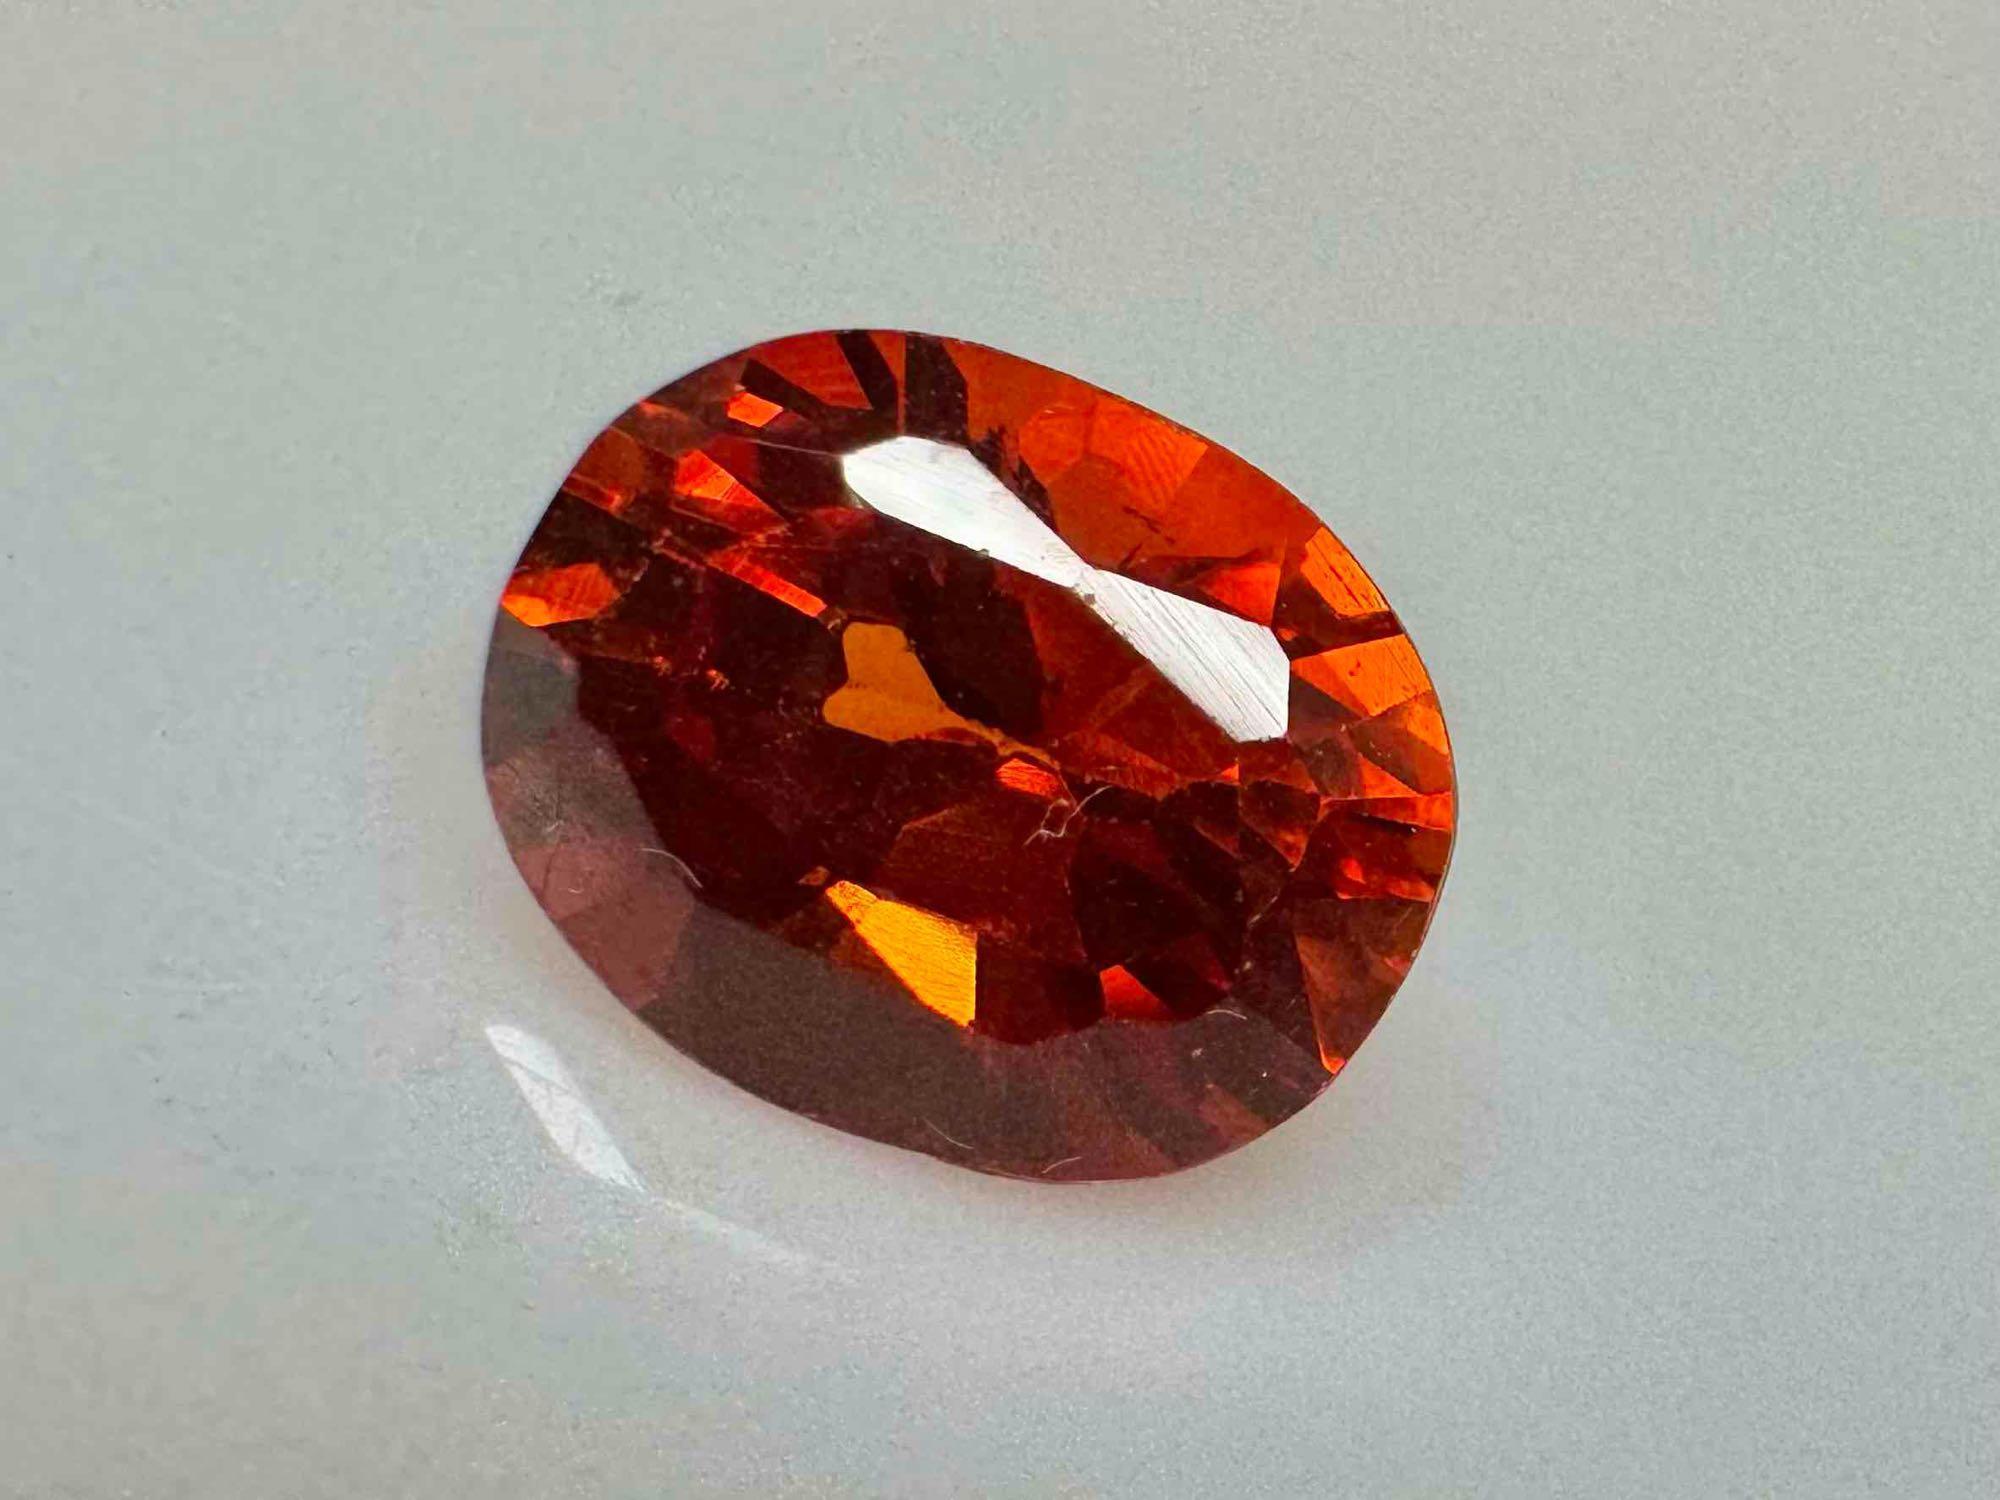 Fanta Orange Sapphire Oval Cut Gemstone Sparkling Stunner 6ct